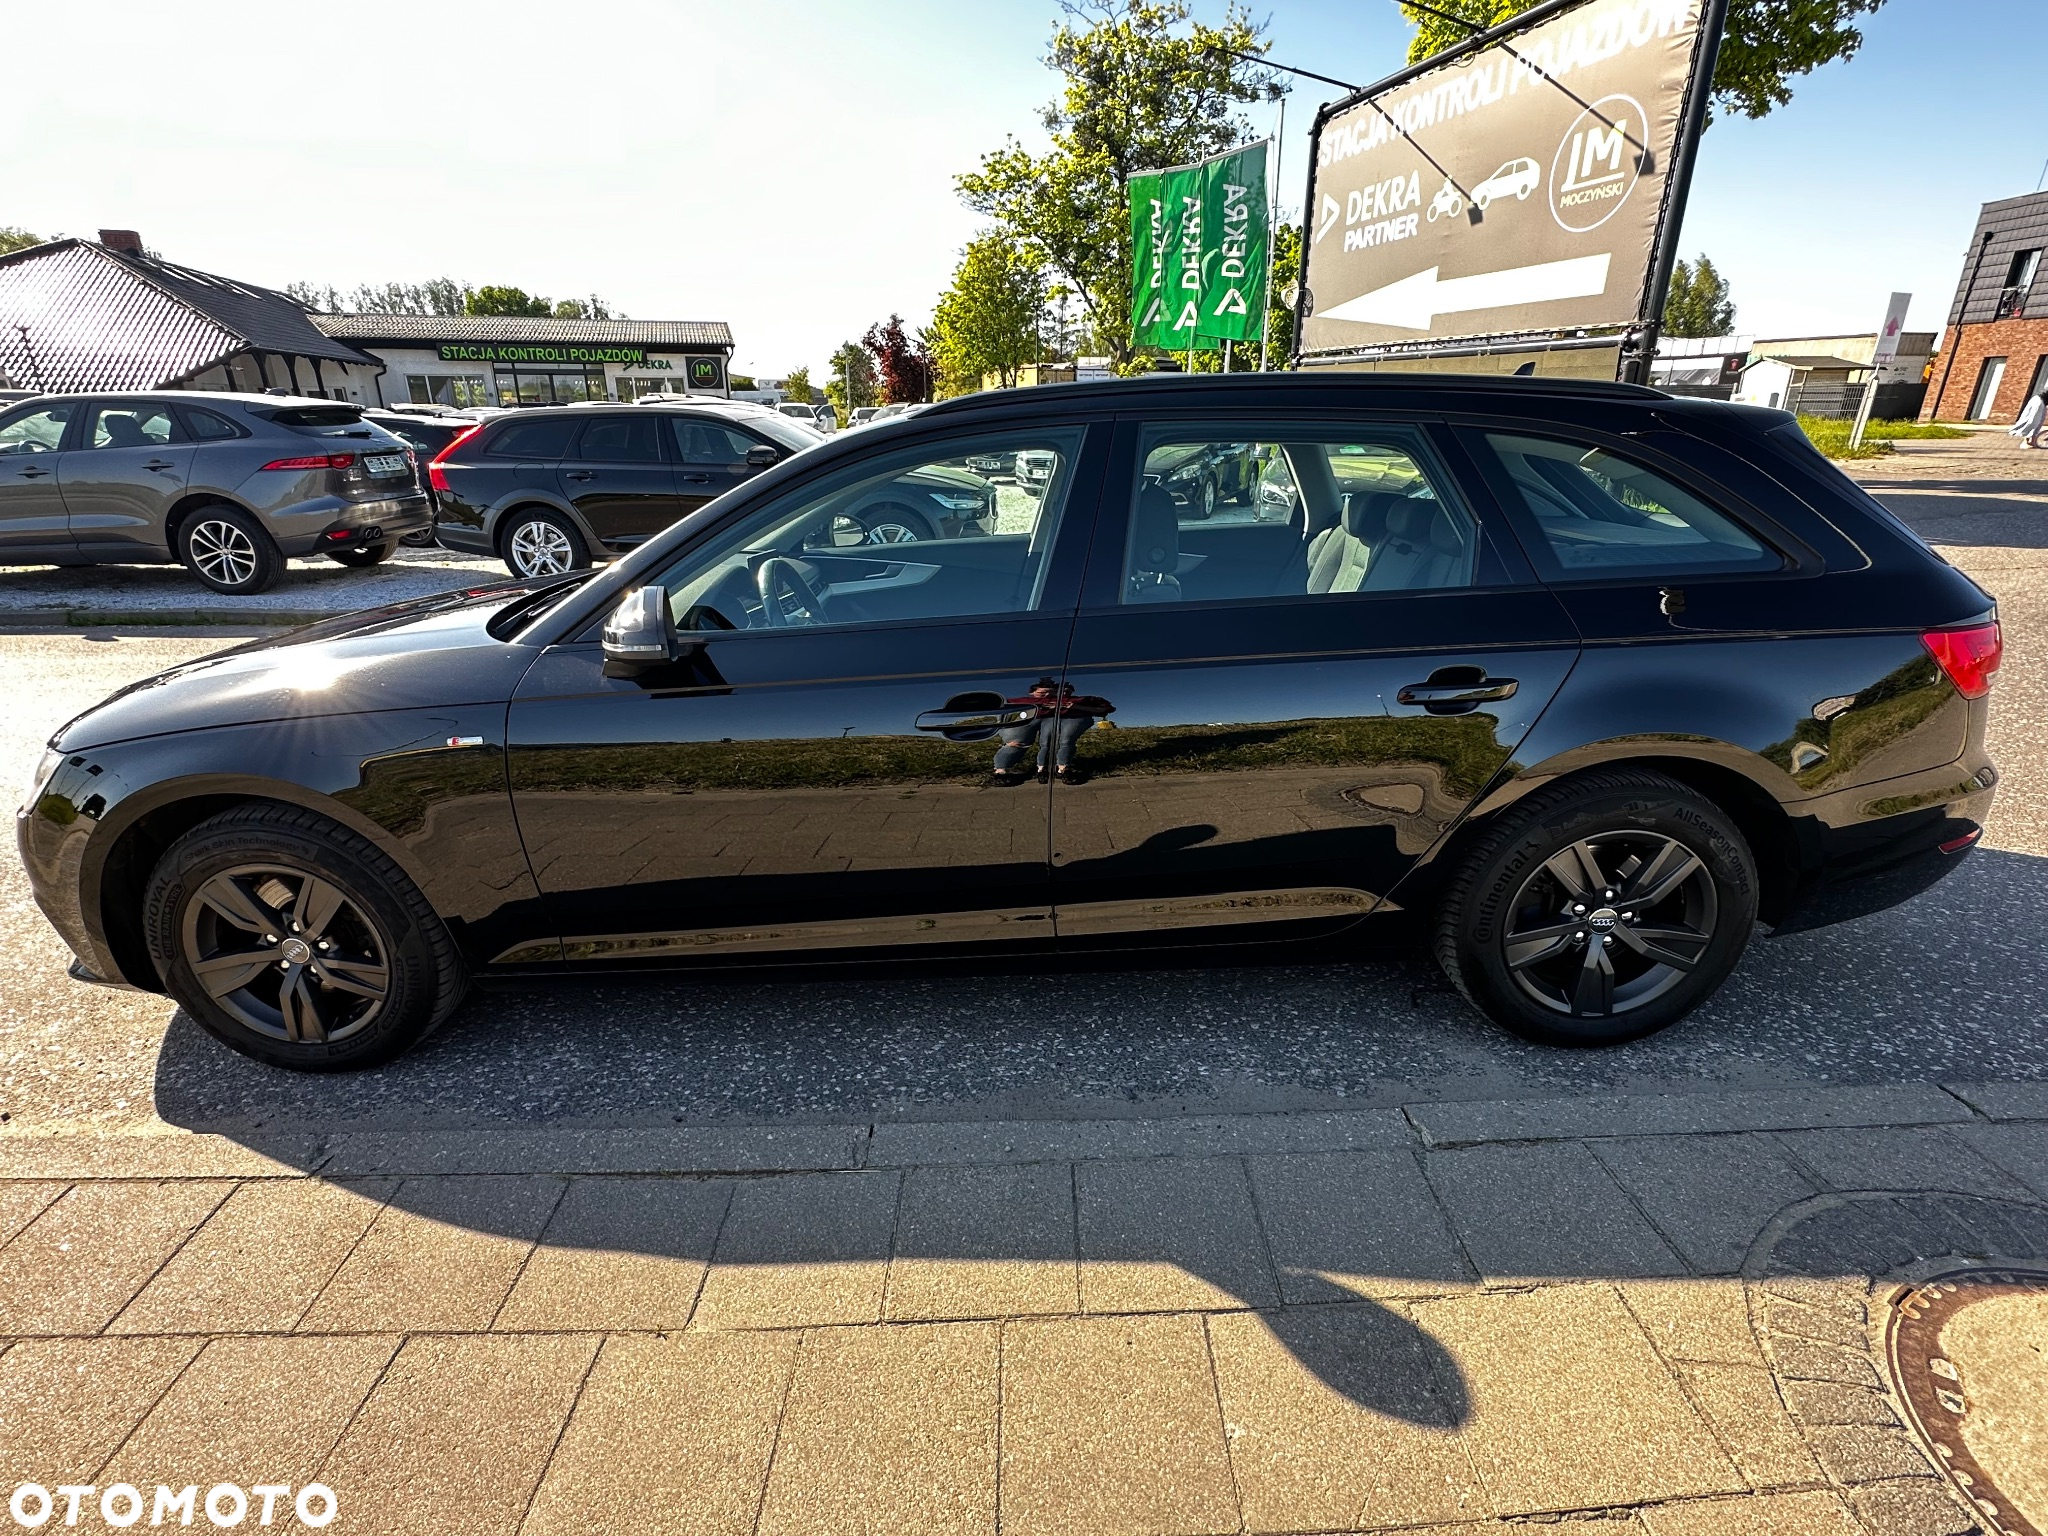 Audi A4 Avant 2.0 TDI - 7